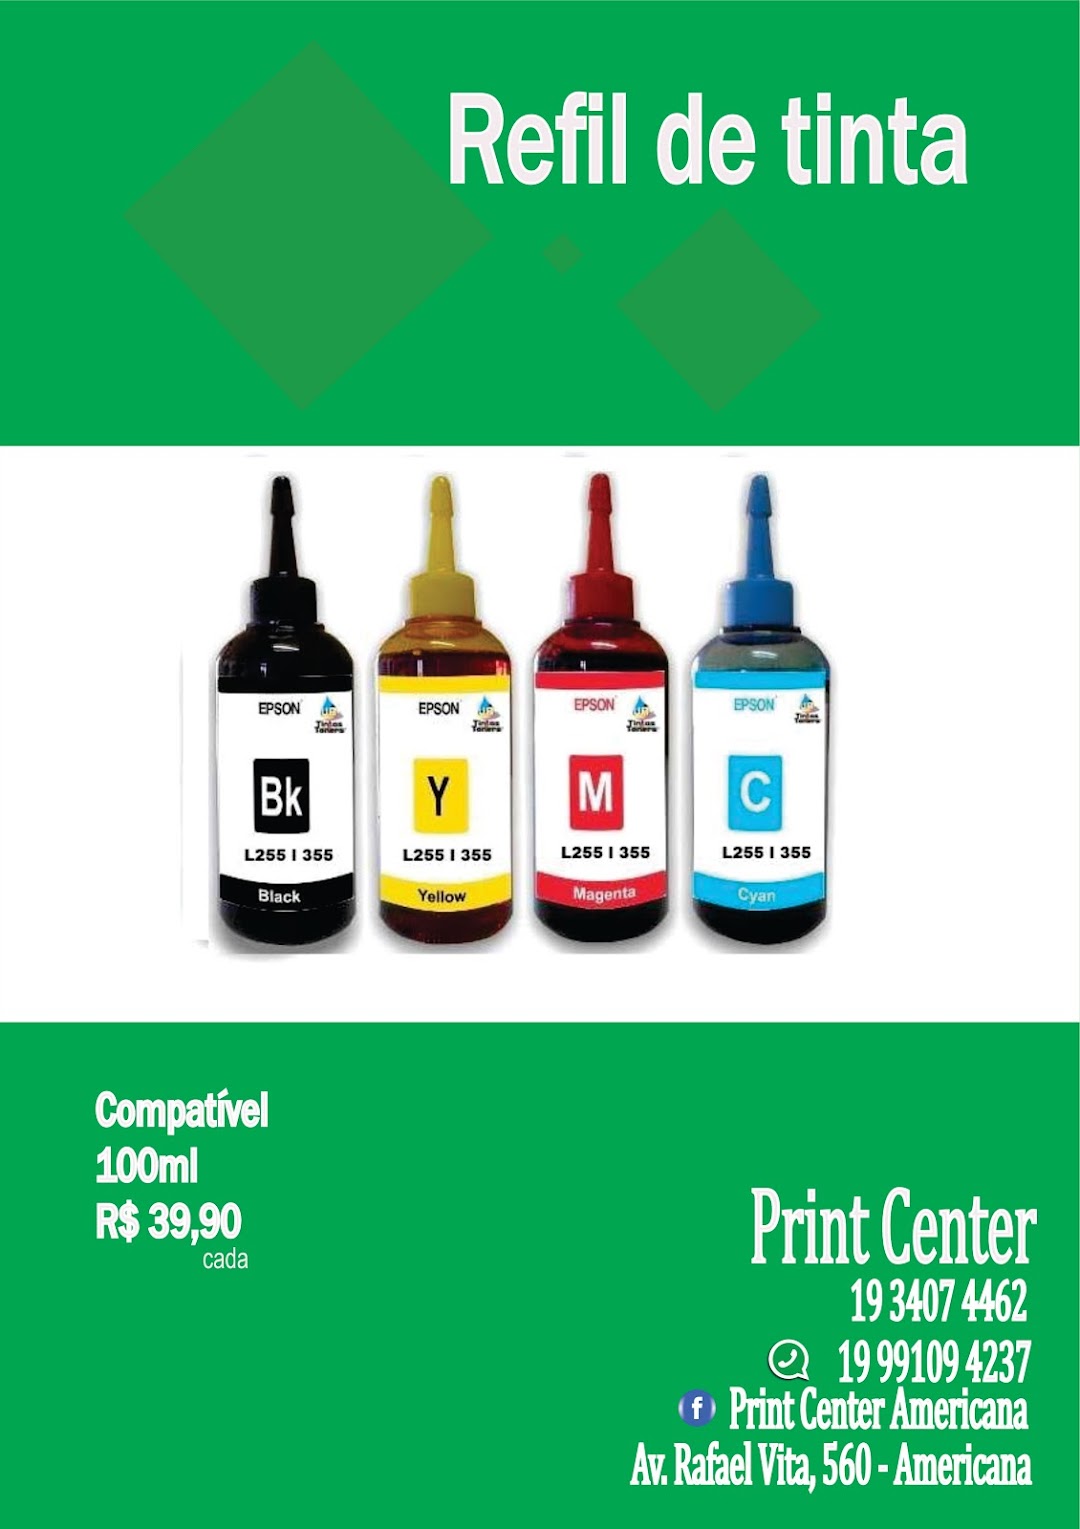 Print Center manutenção e suprimentos para impressoras